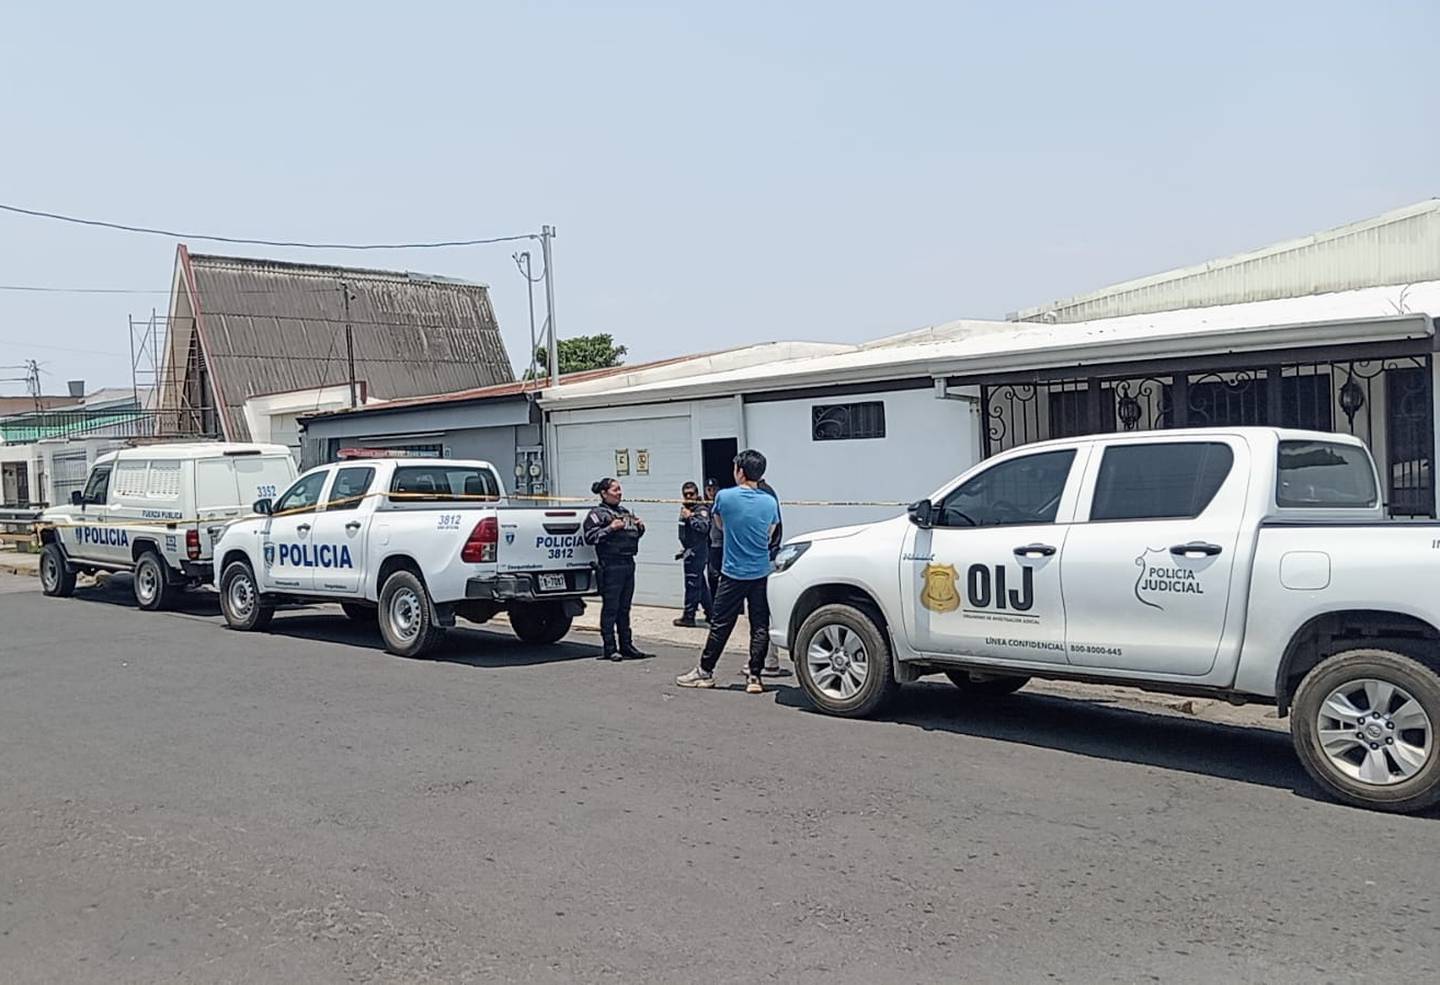 Agentes del OIJ llegaron al sitio en San Rafael de Oreamuno para determinar lo ocurrido y buscar a los sospechosos de la mortal golpiza. Foto: Keyna Calderón.